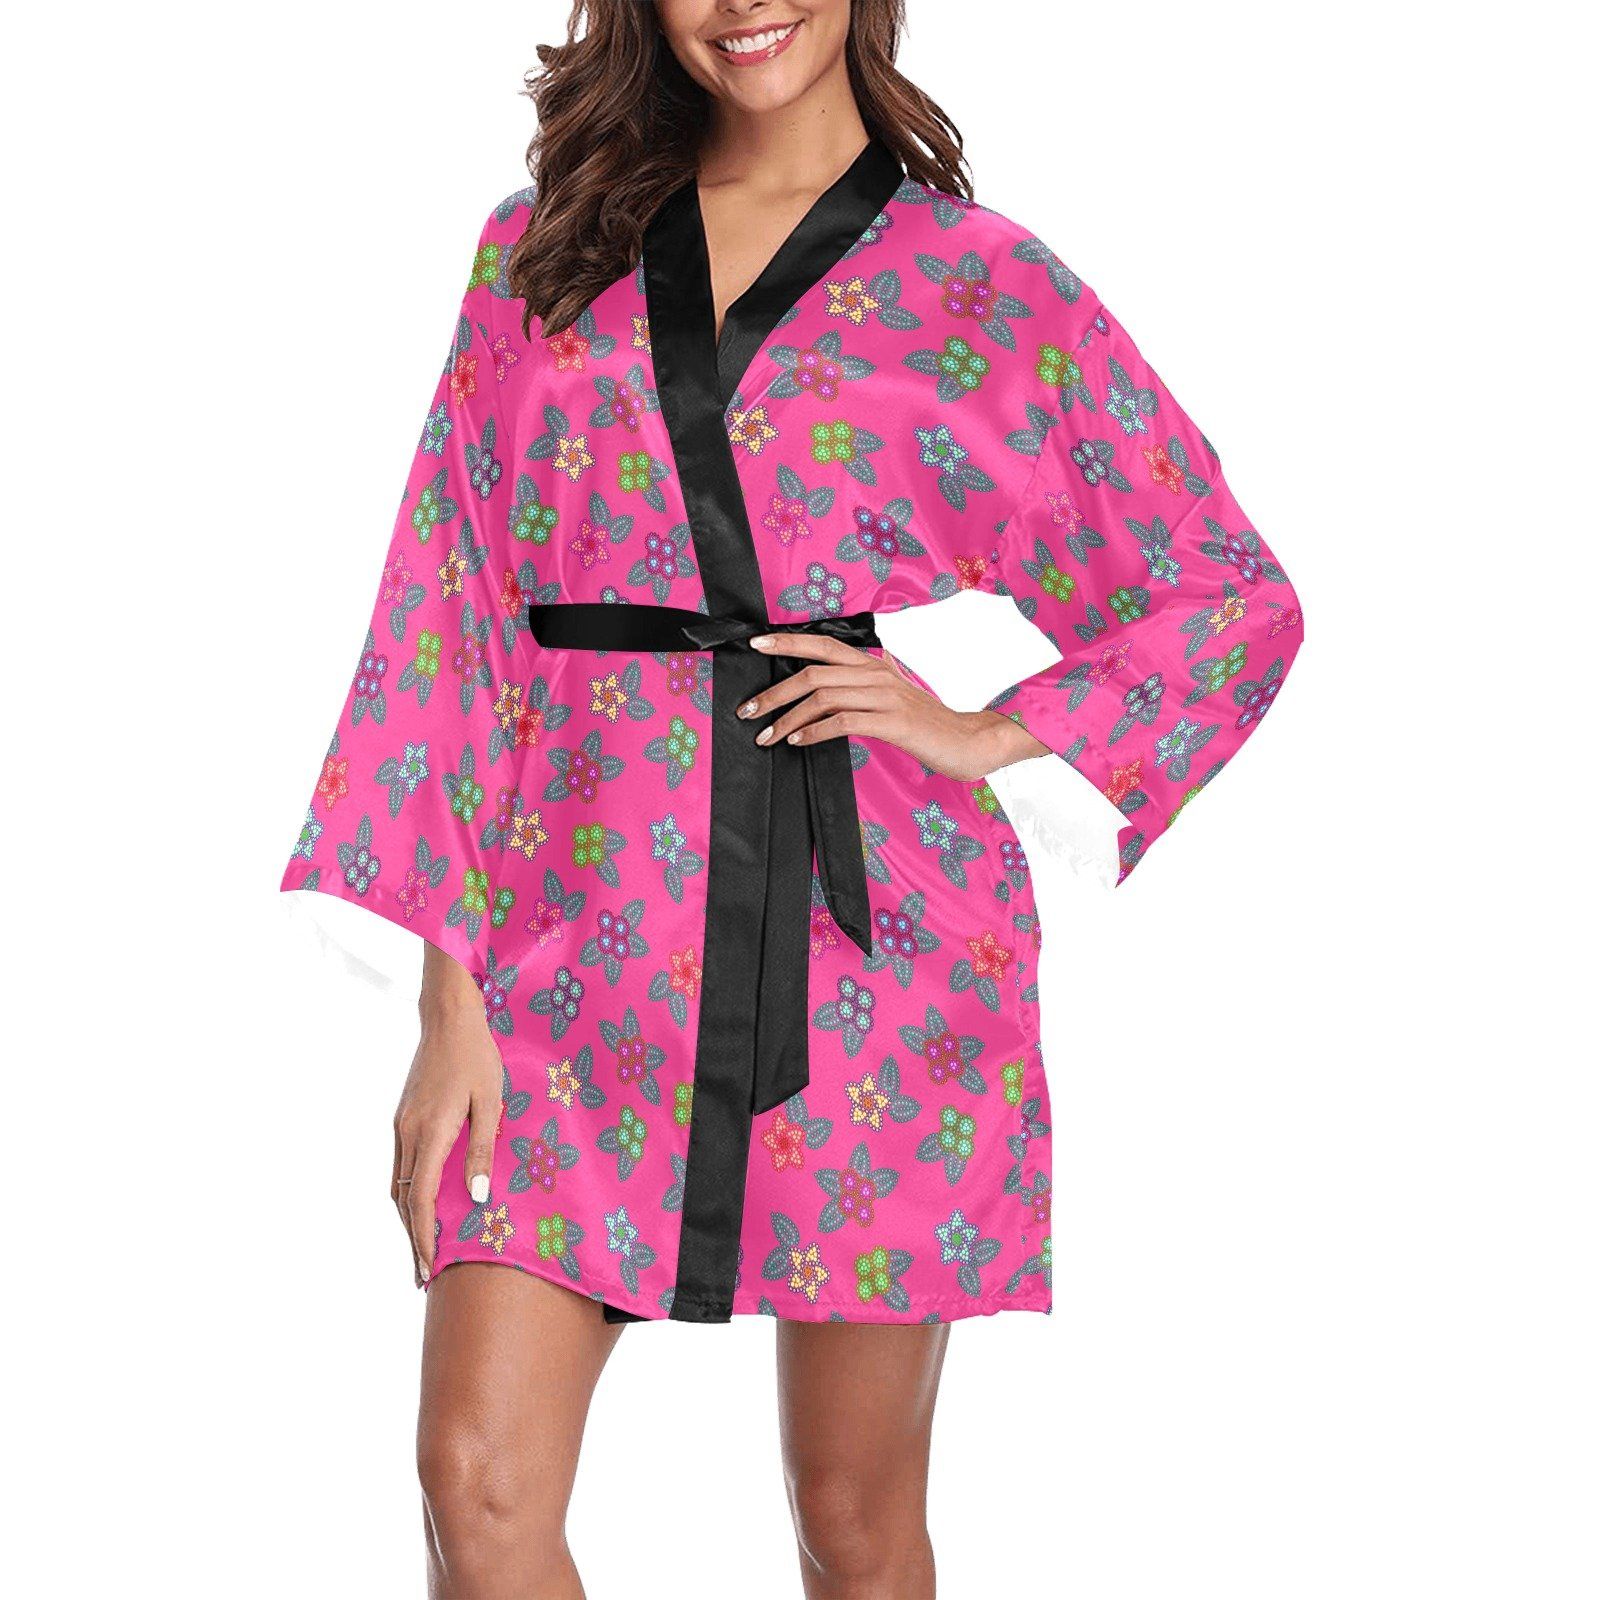 Berry Flowers Long Sleeve Kimono Robe Long Sleeve Kimono Robe e-joyer 